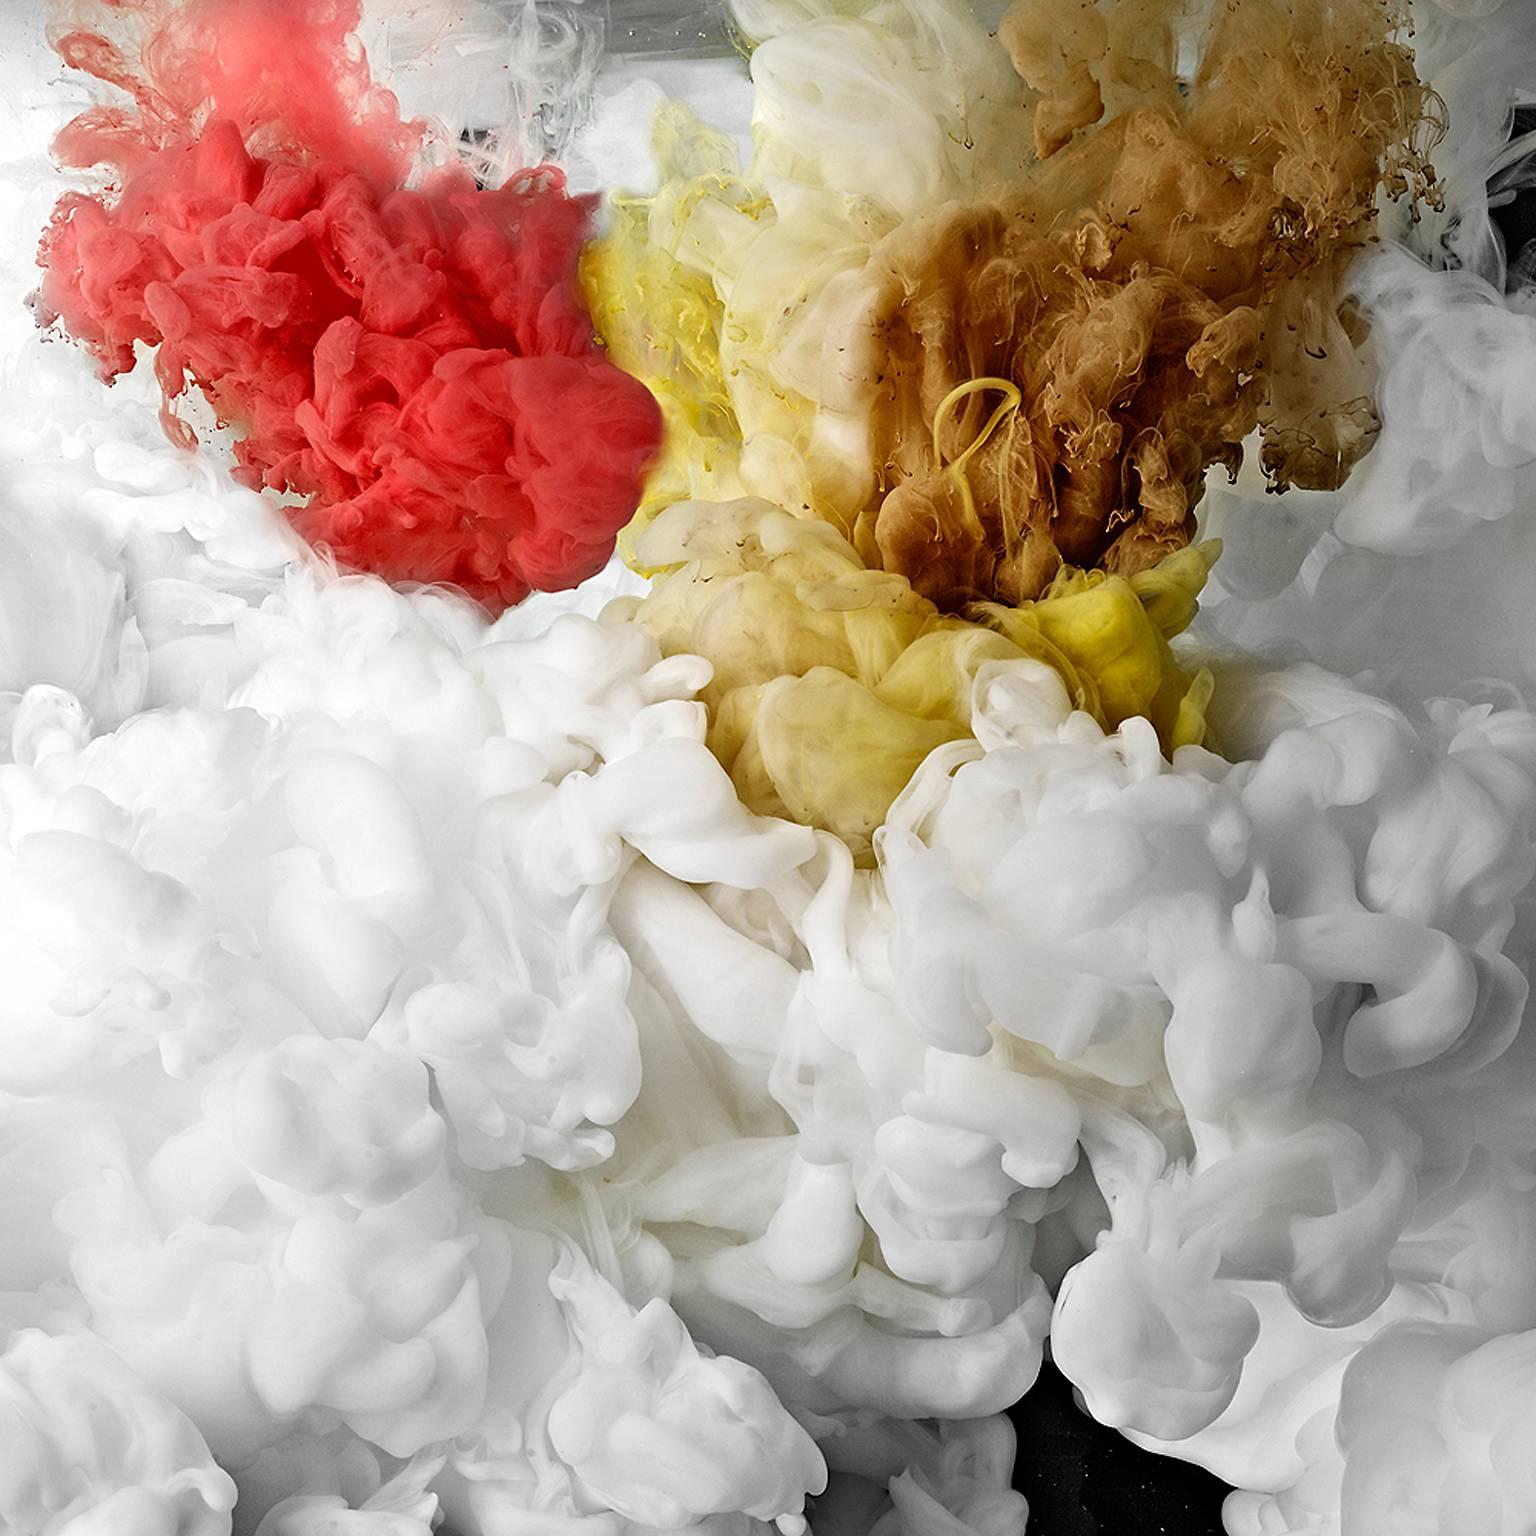 Christian Stoll Abstract Print – Flow II  - Großformatige Fotografie von abstrakten Wolkenlandschaften aus flüssigem Wasser